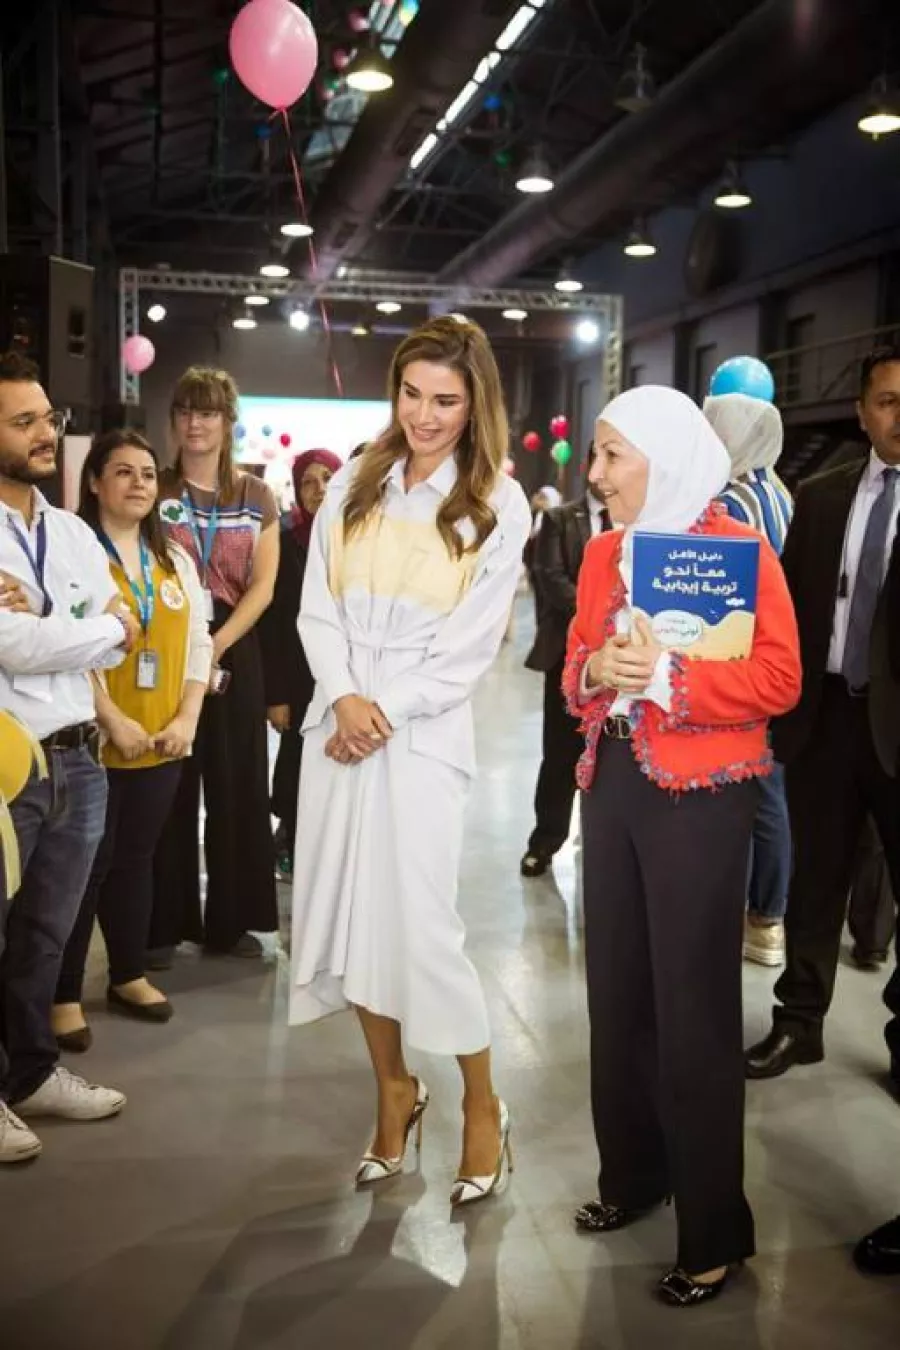 الملكة رانيا في زيارة إلى مهرجان يوميات لوني بالوني.jpg